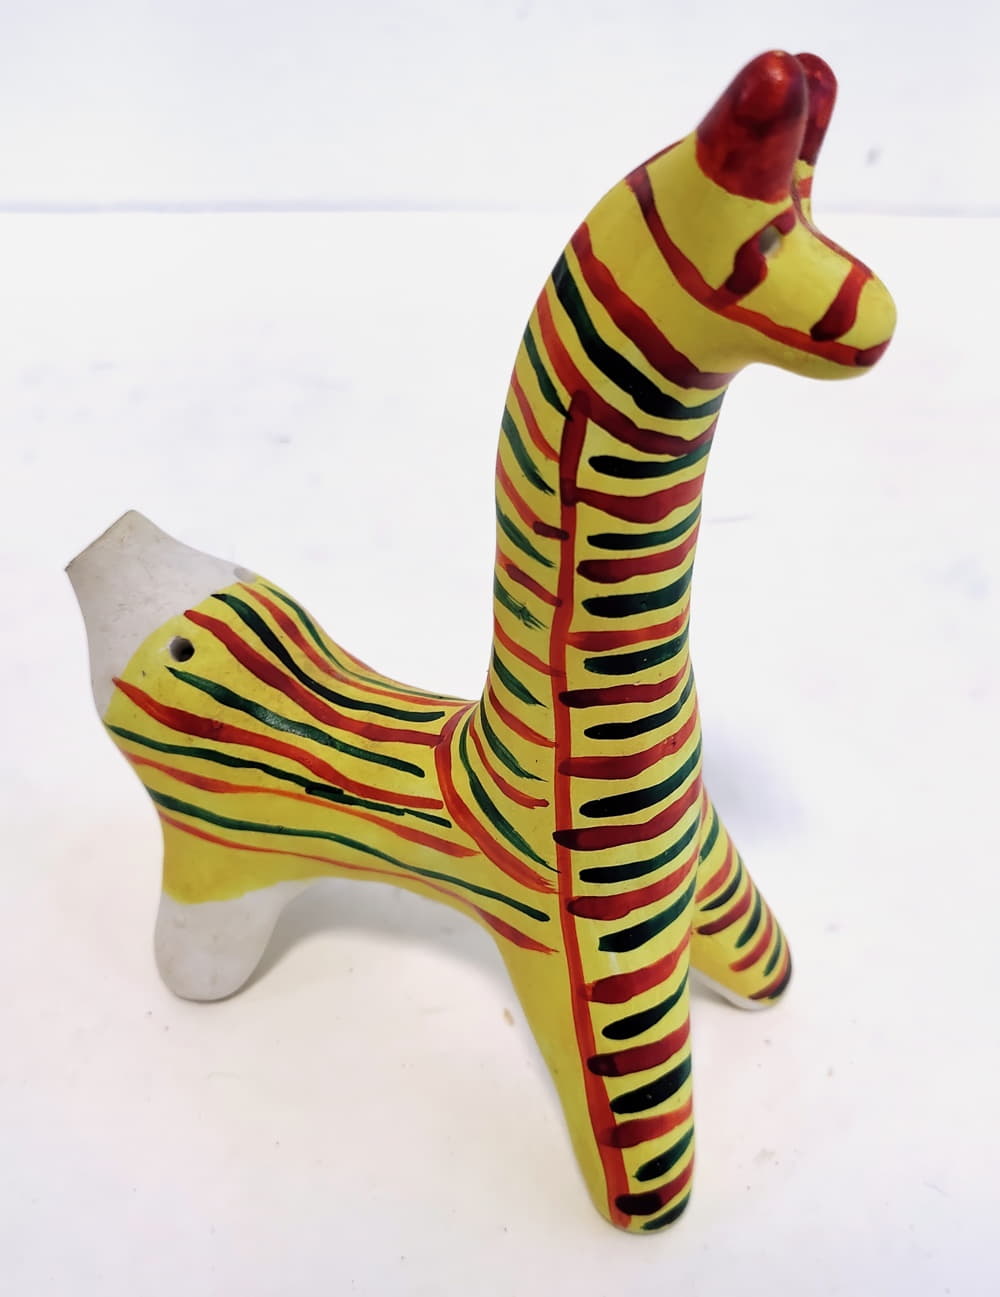 Керамическая свистулька как разновидность глиняной игрушки - презентация онлайн